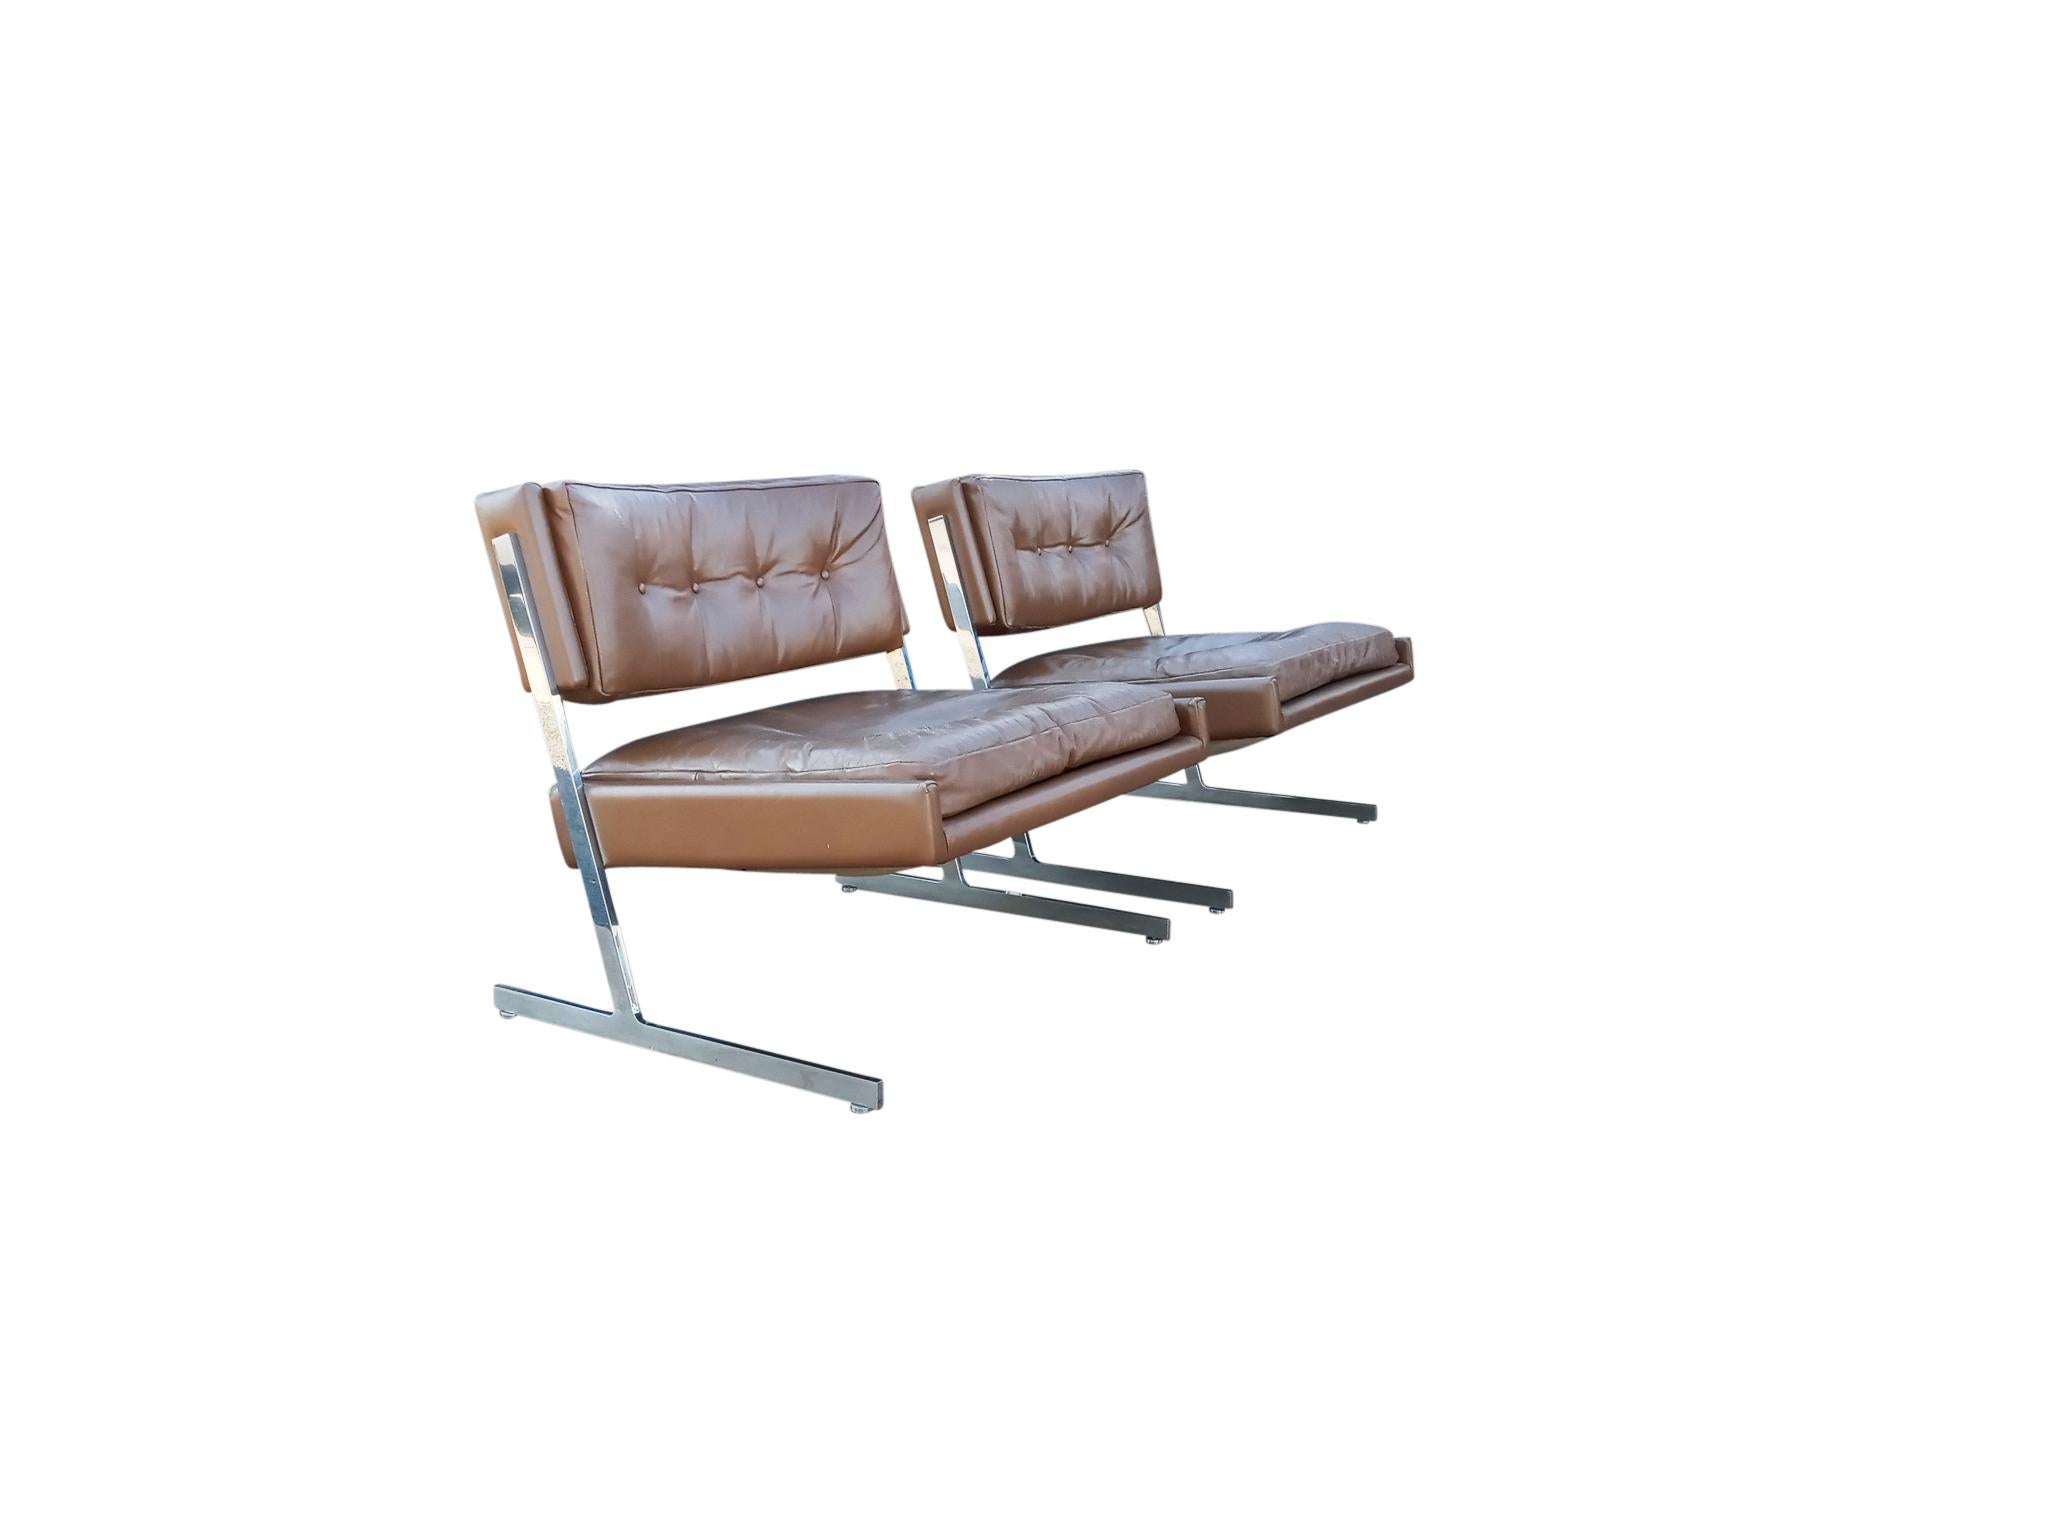 Cette élégante paire de chaises longues Probber présente un profil dynamique obtenu grâce à l'utilisation d'un siège cantonné soutenu par des cadres en acier inoxydable poli. Le cuir origina marron chocolat est capitonné. Et les cadres en acier